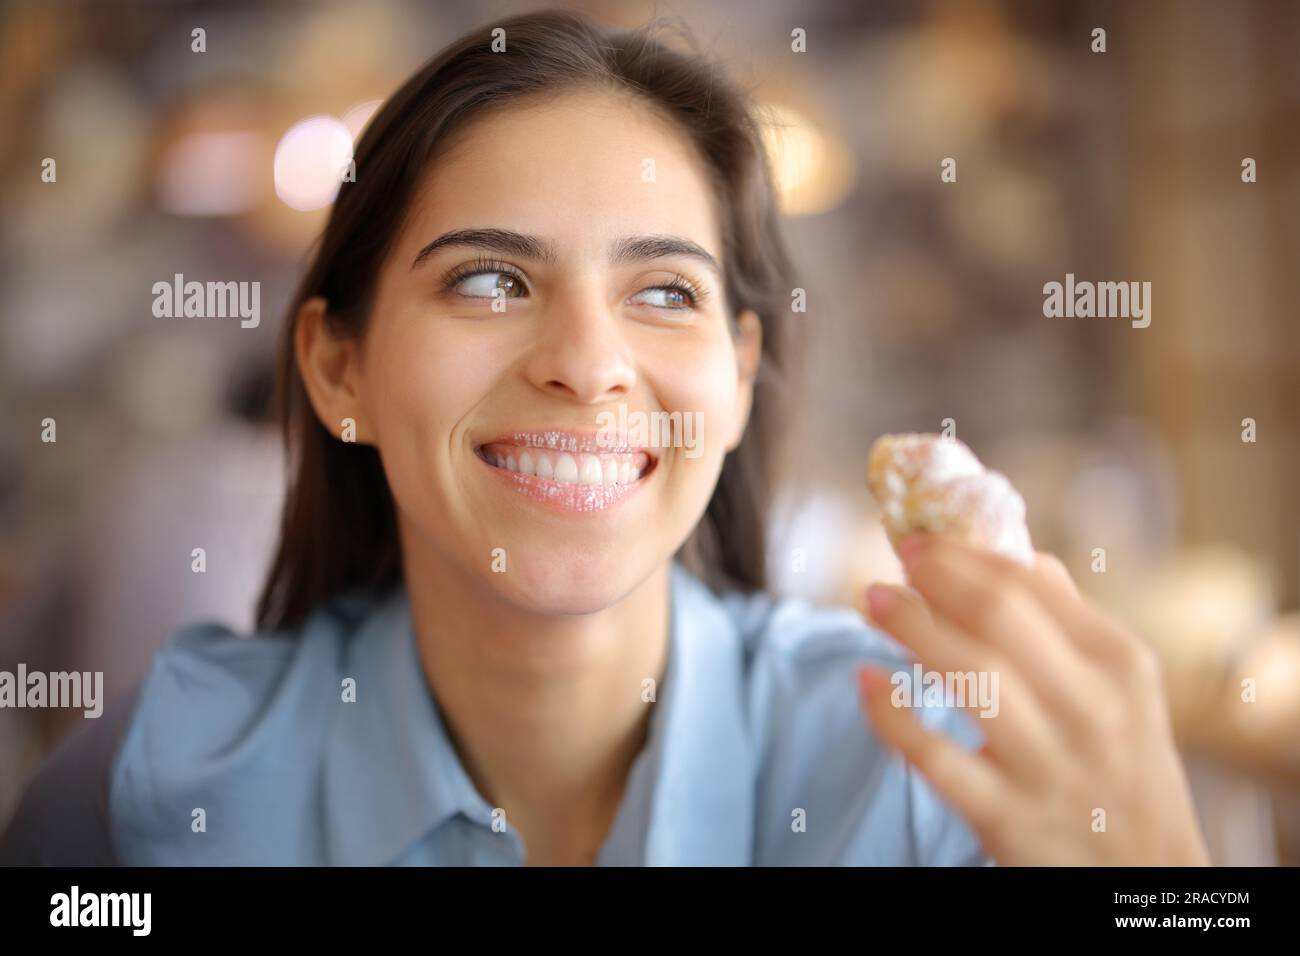 Le client du restaurant est content de manger un croissant avec des lèvres sales qui regardent loin Banque D'Images